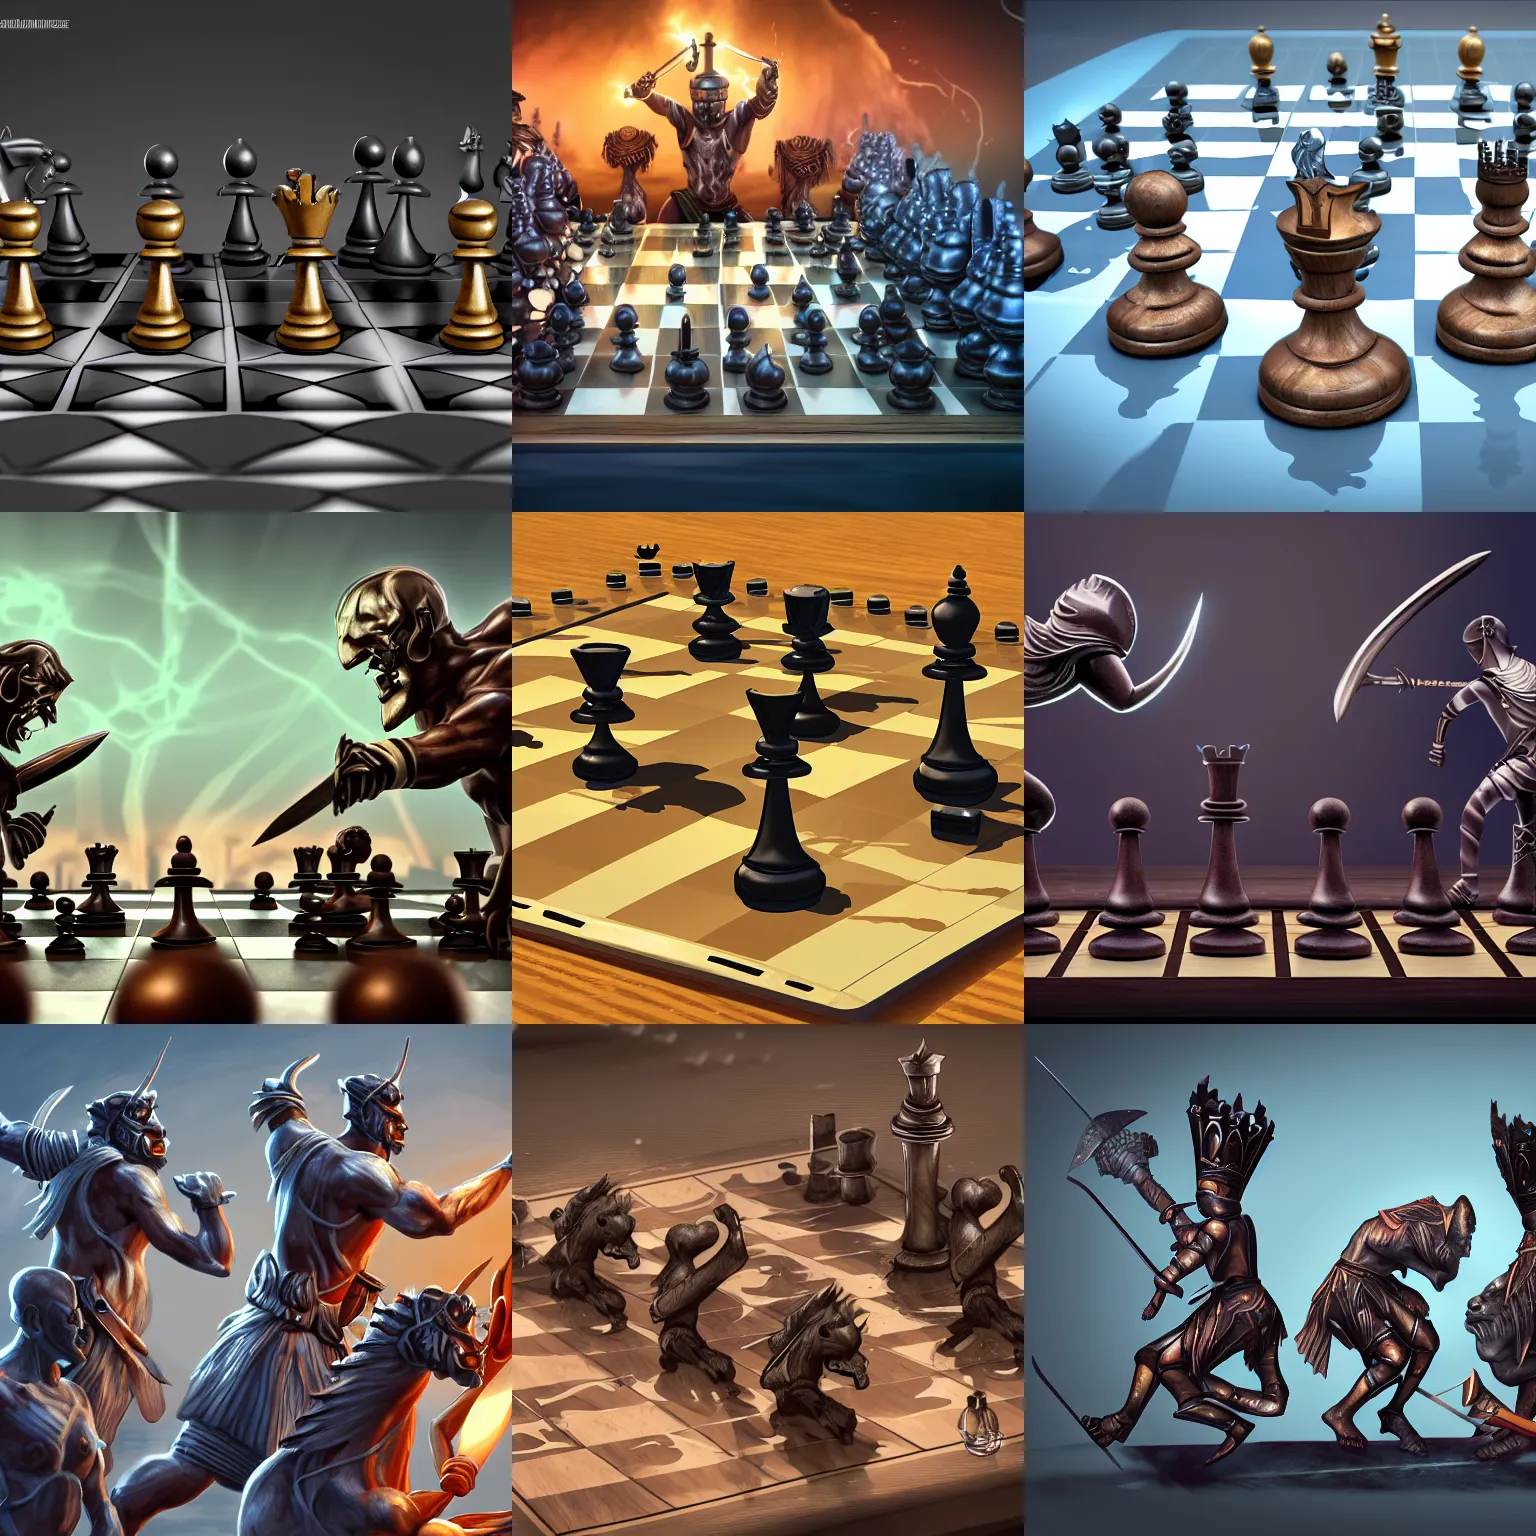 Chessforeva: Unreal 2 Runtime Chess Box